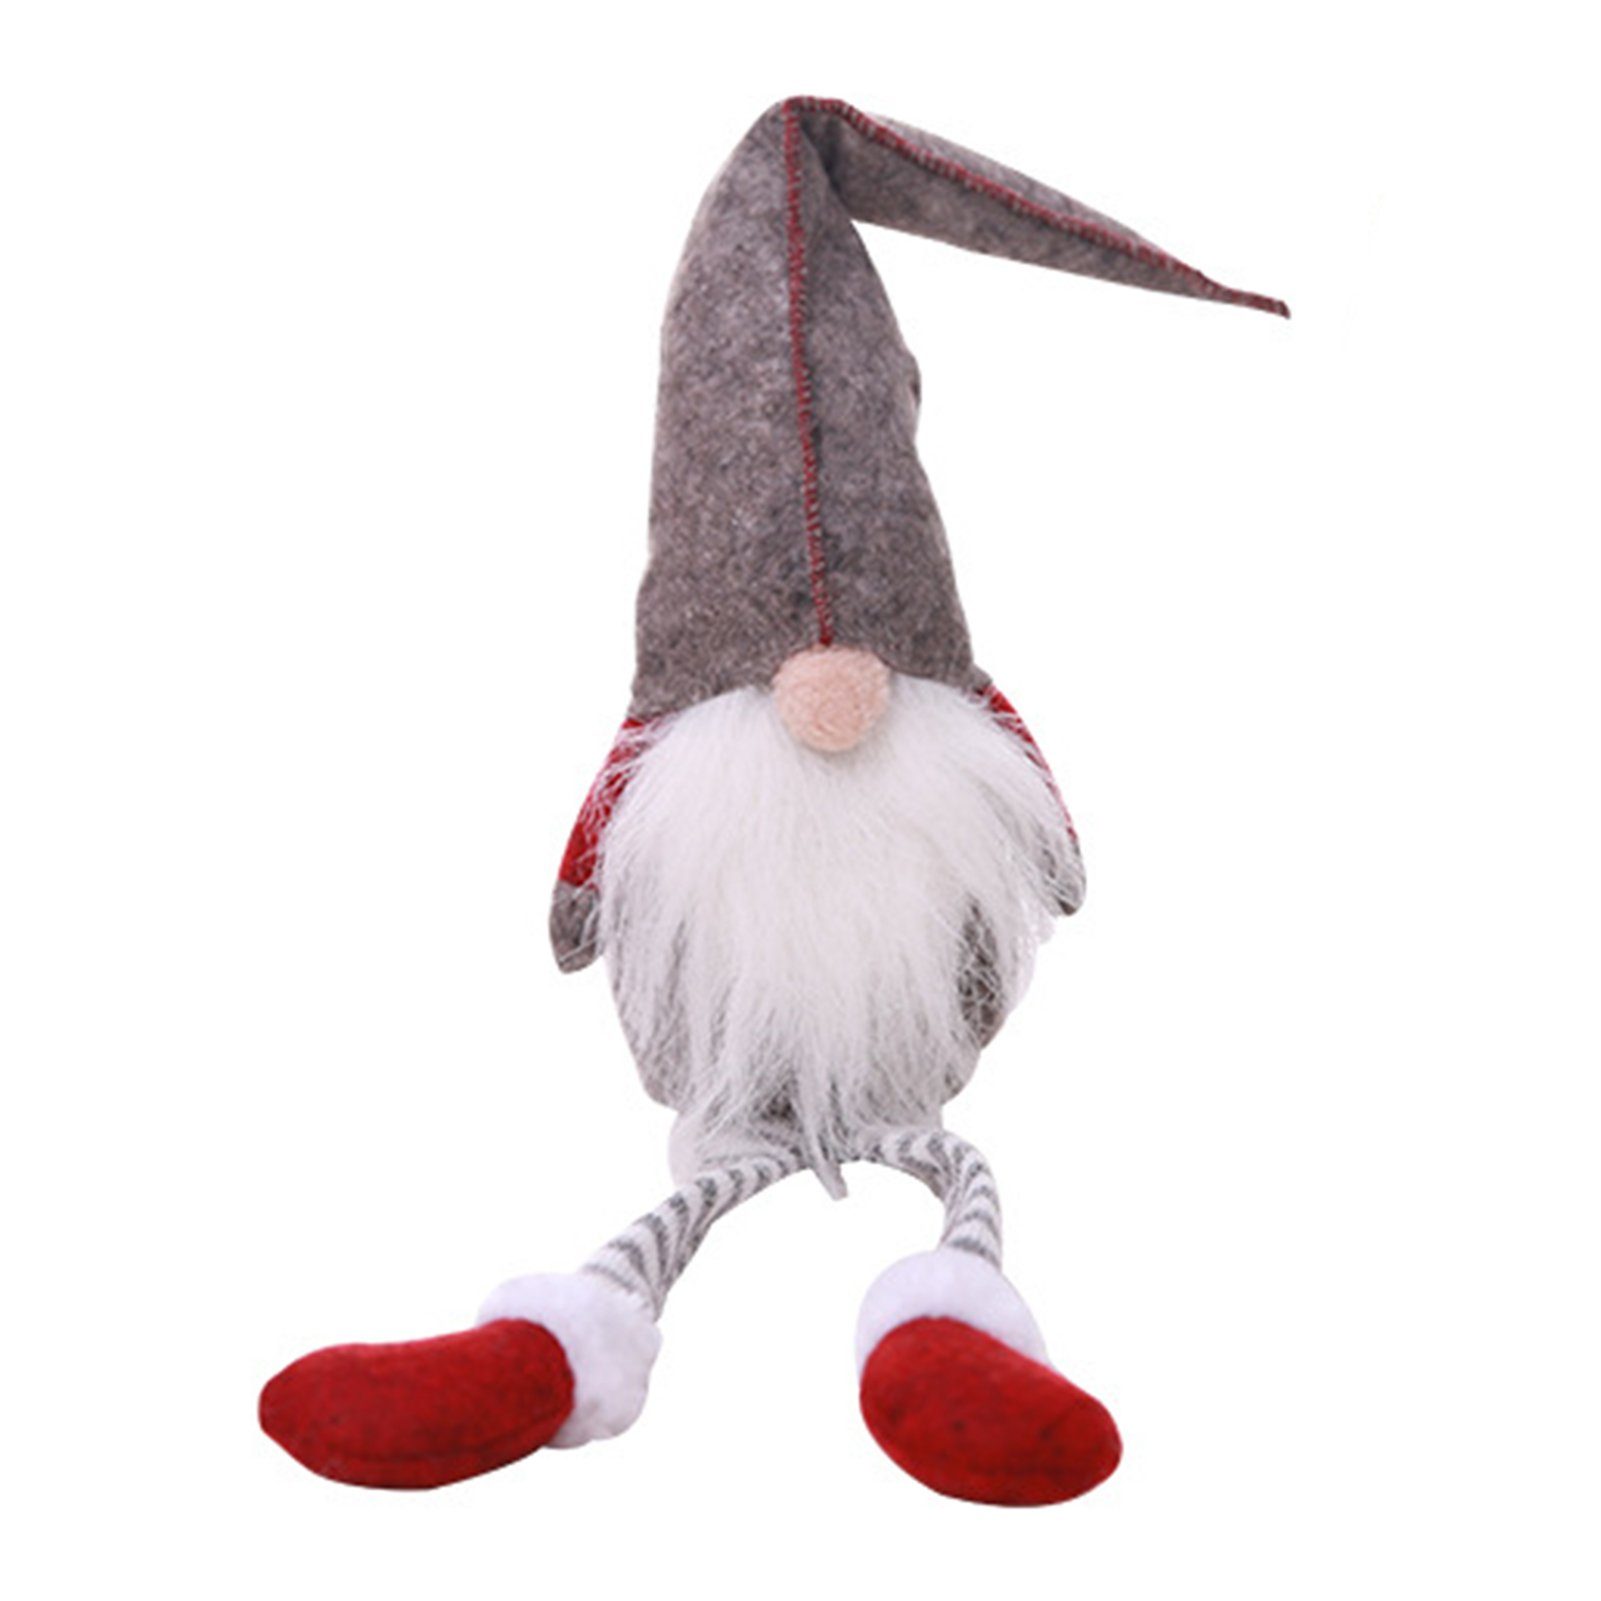 Blusmart Christbaumschmuck Gesichtslose Weihnachtspuppe Mit Langen Beinen, Personalisierte grey